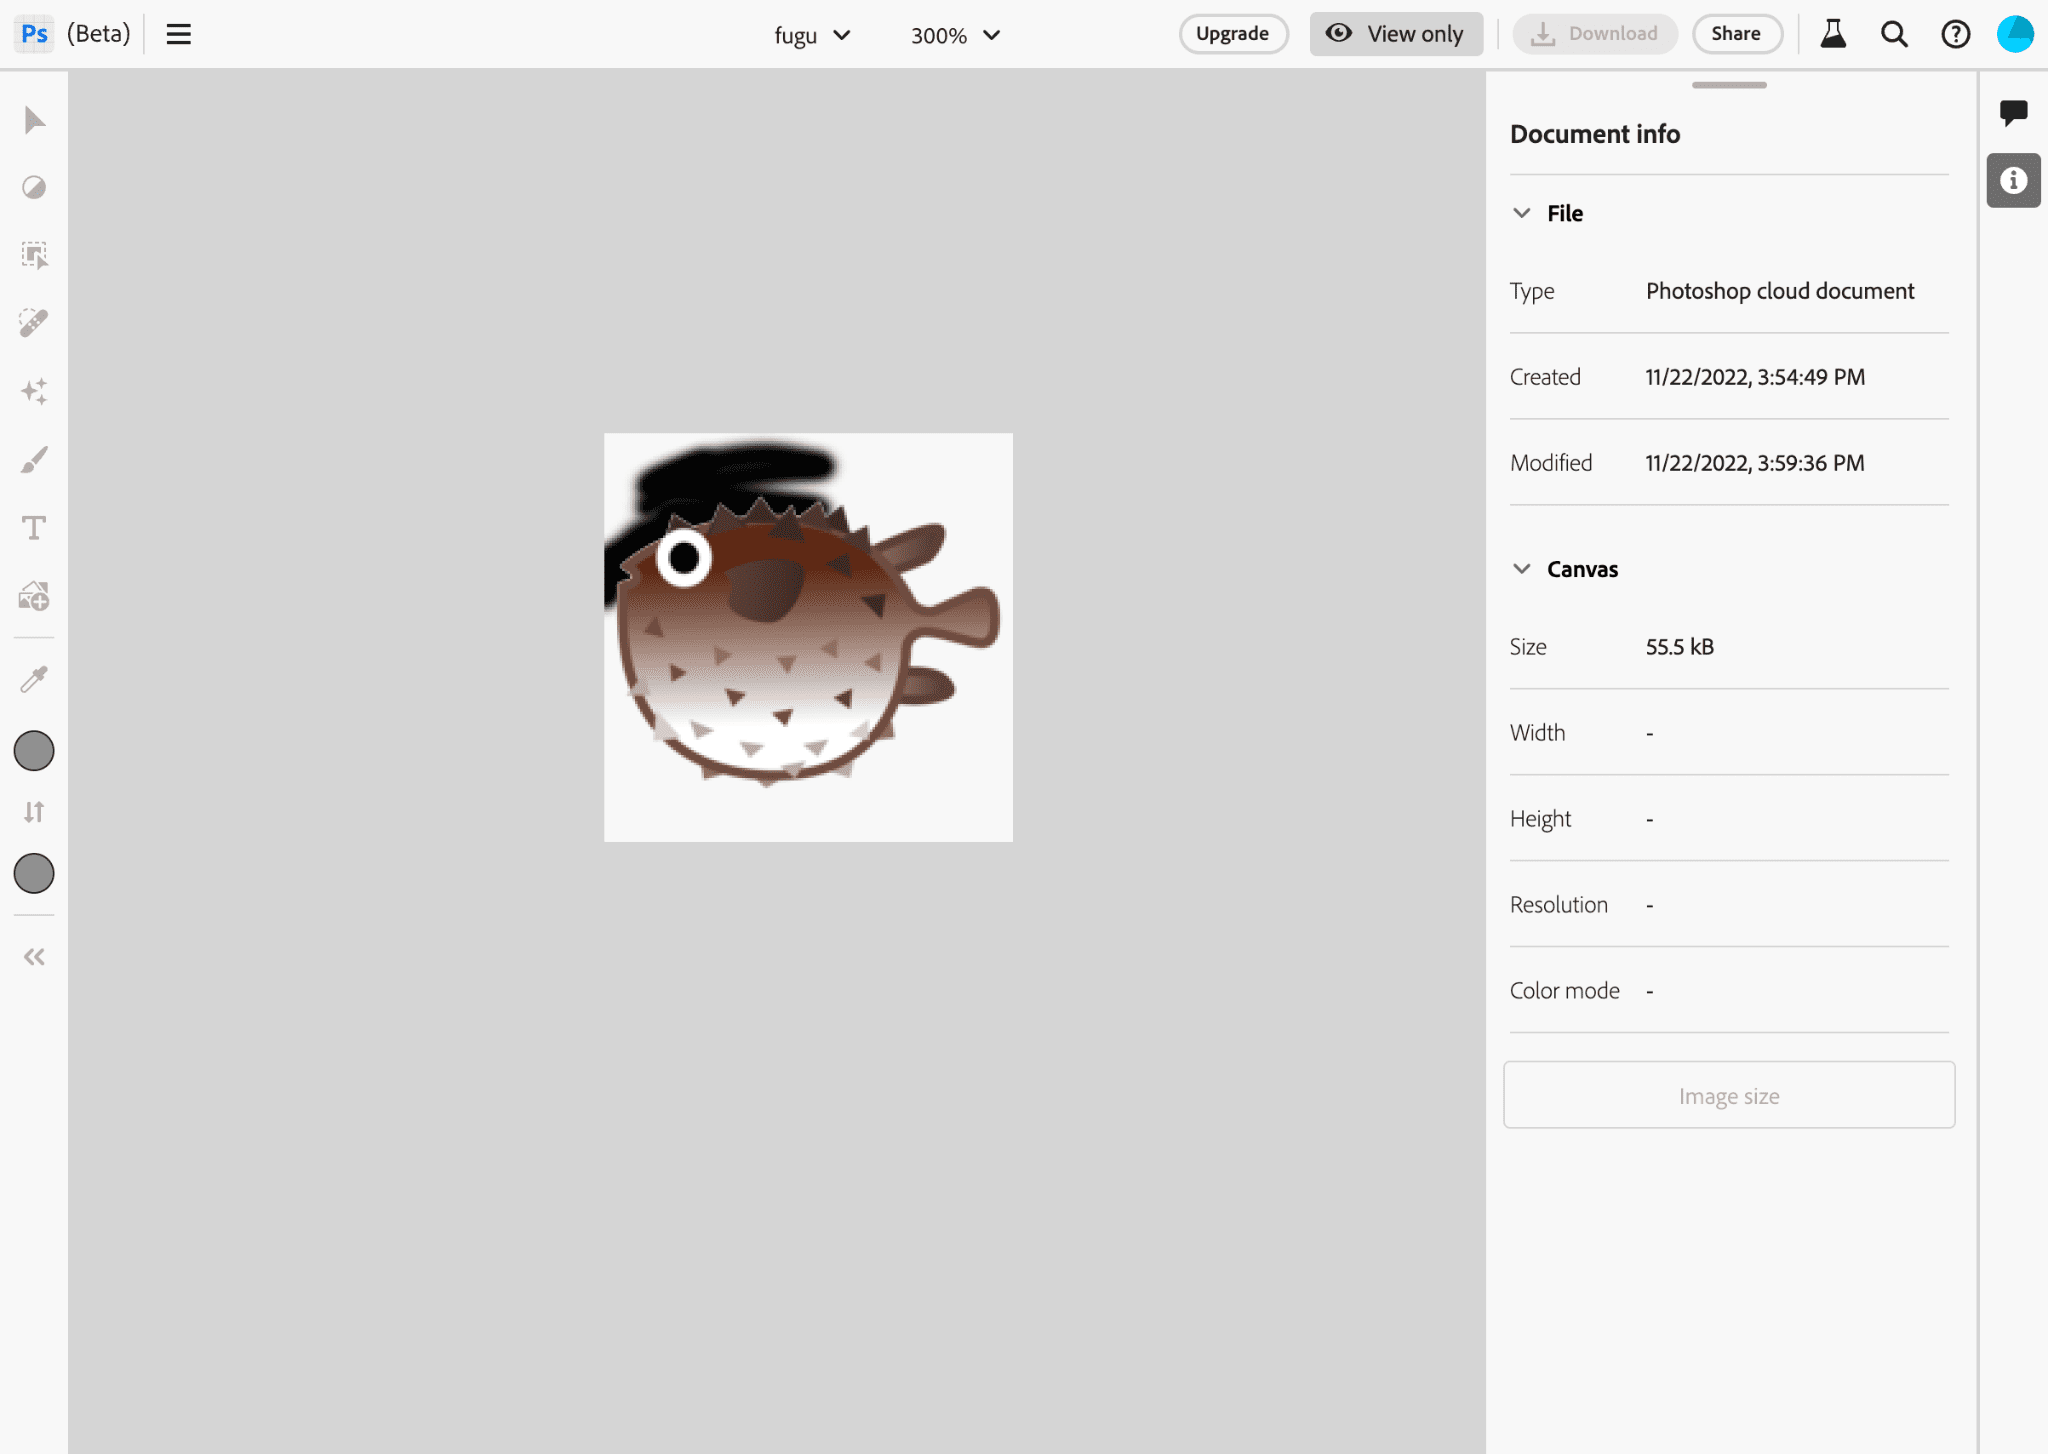 Ứng dụng Photoshop trong khi chỉnh sửa hình ảnh biểu trưng Project Fugu.